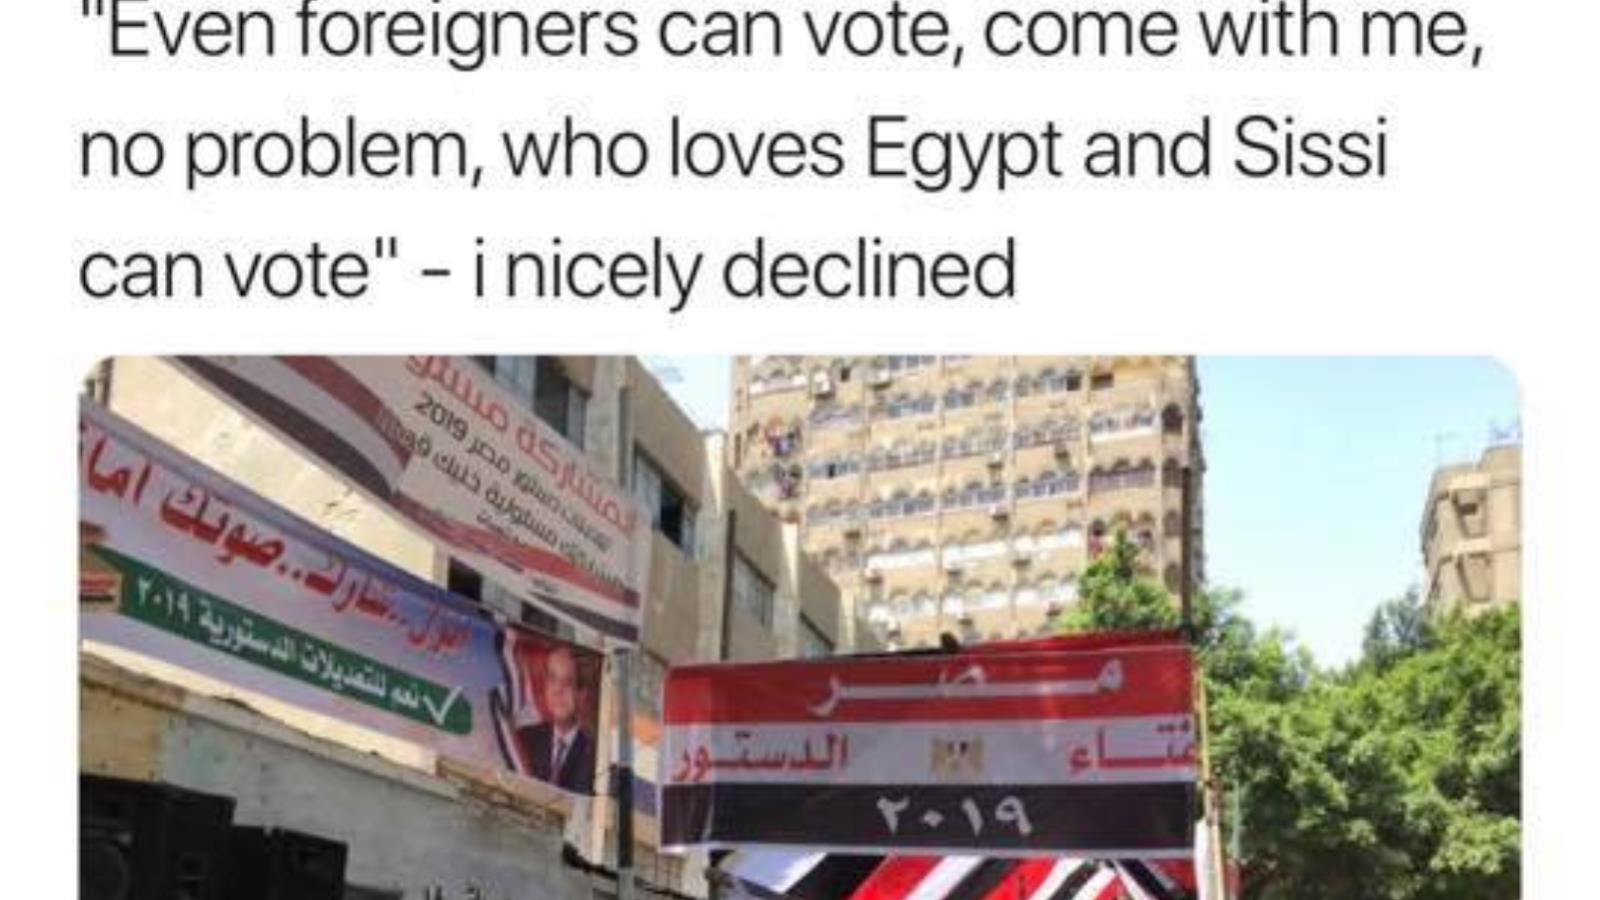 مراسلة أجنبية فوجئت بدعوتها للتصويت دون مشاكل (مواقع التواصل)